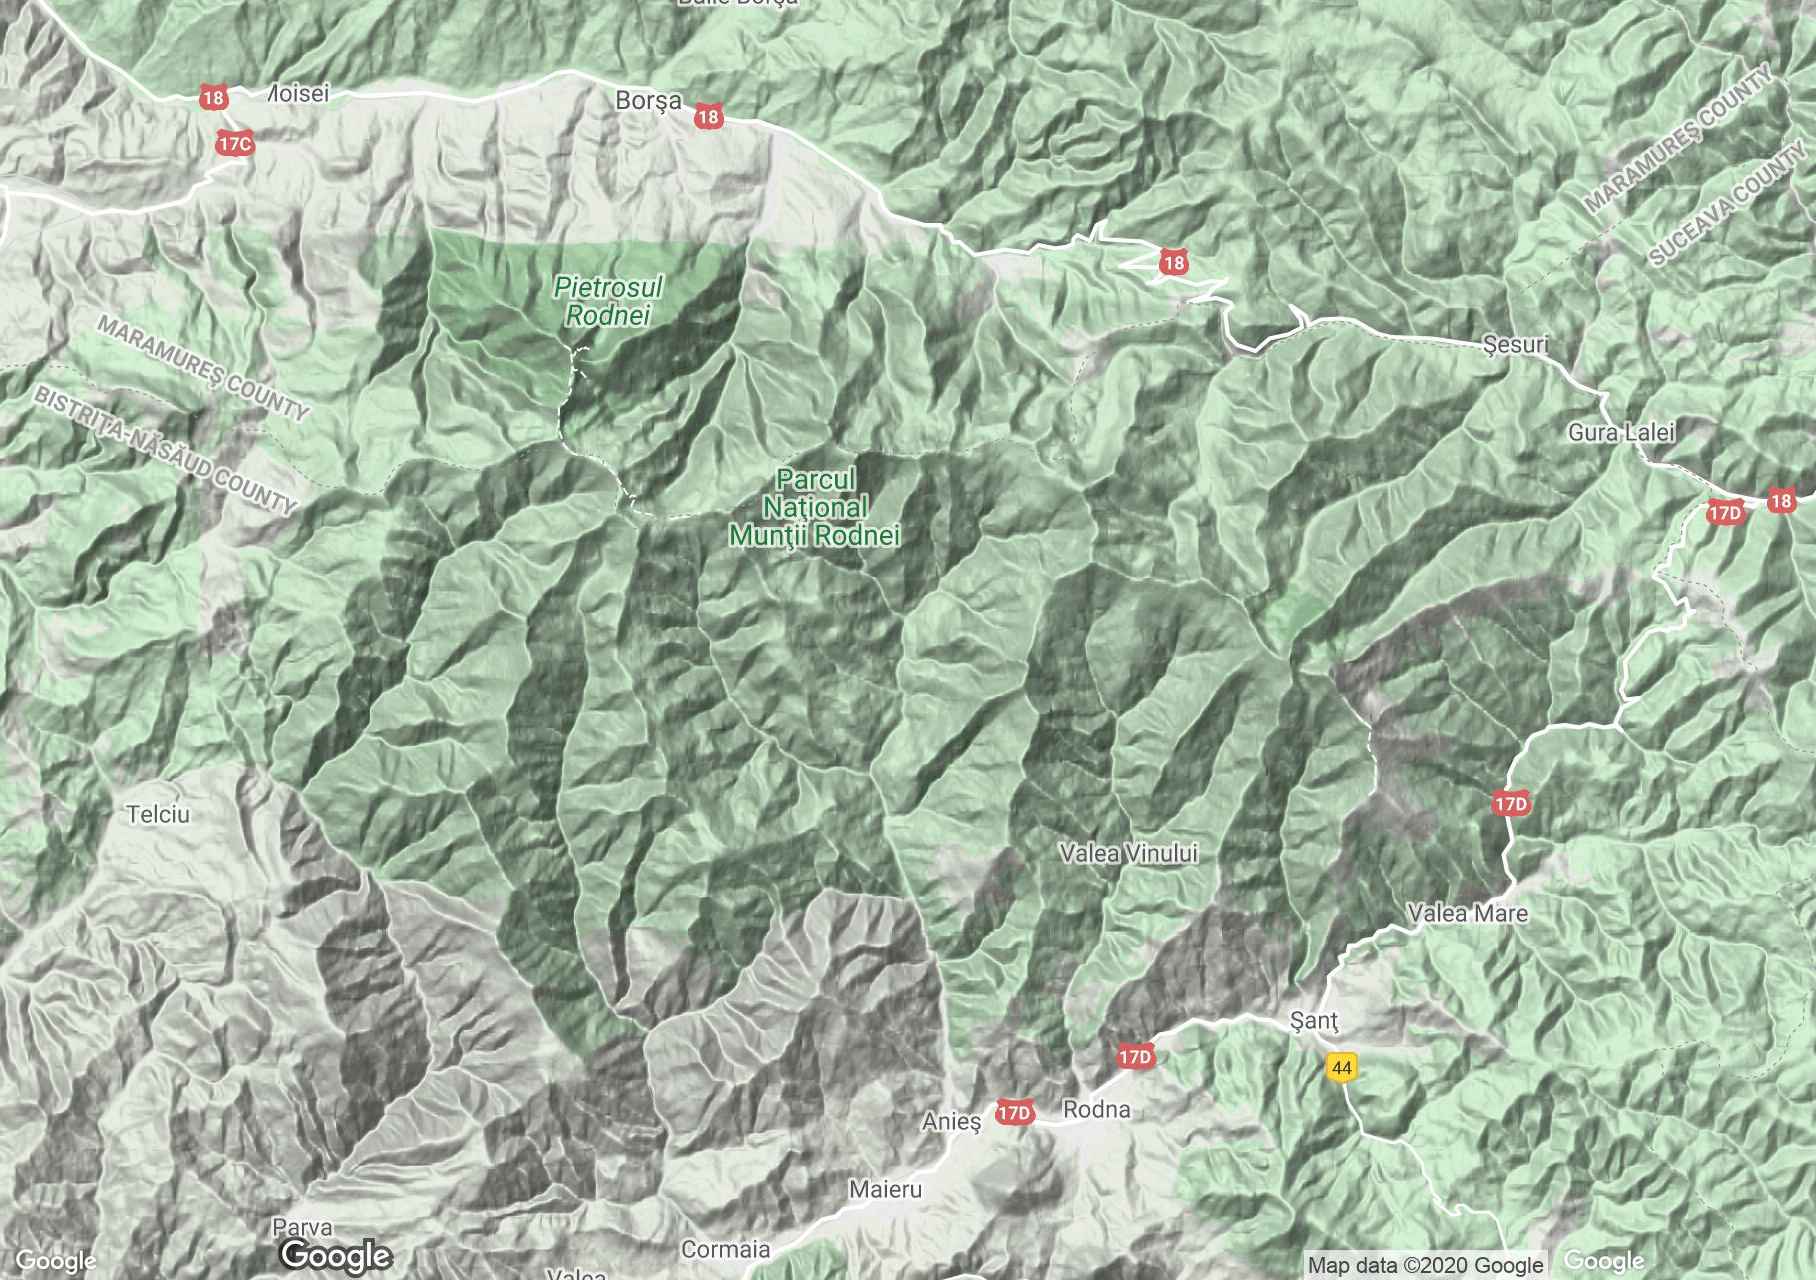 Radnai-hegység interaktív turista térképe.